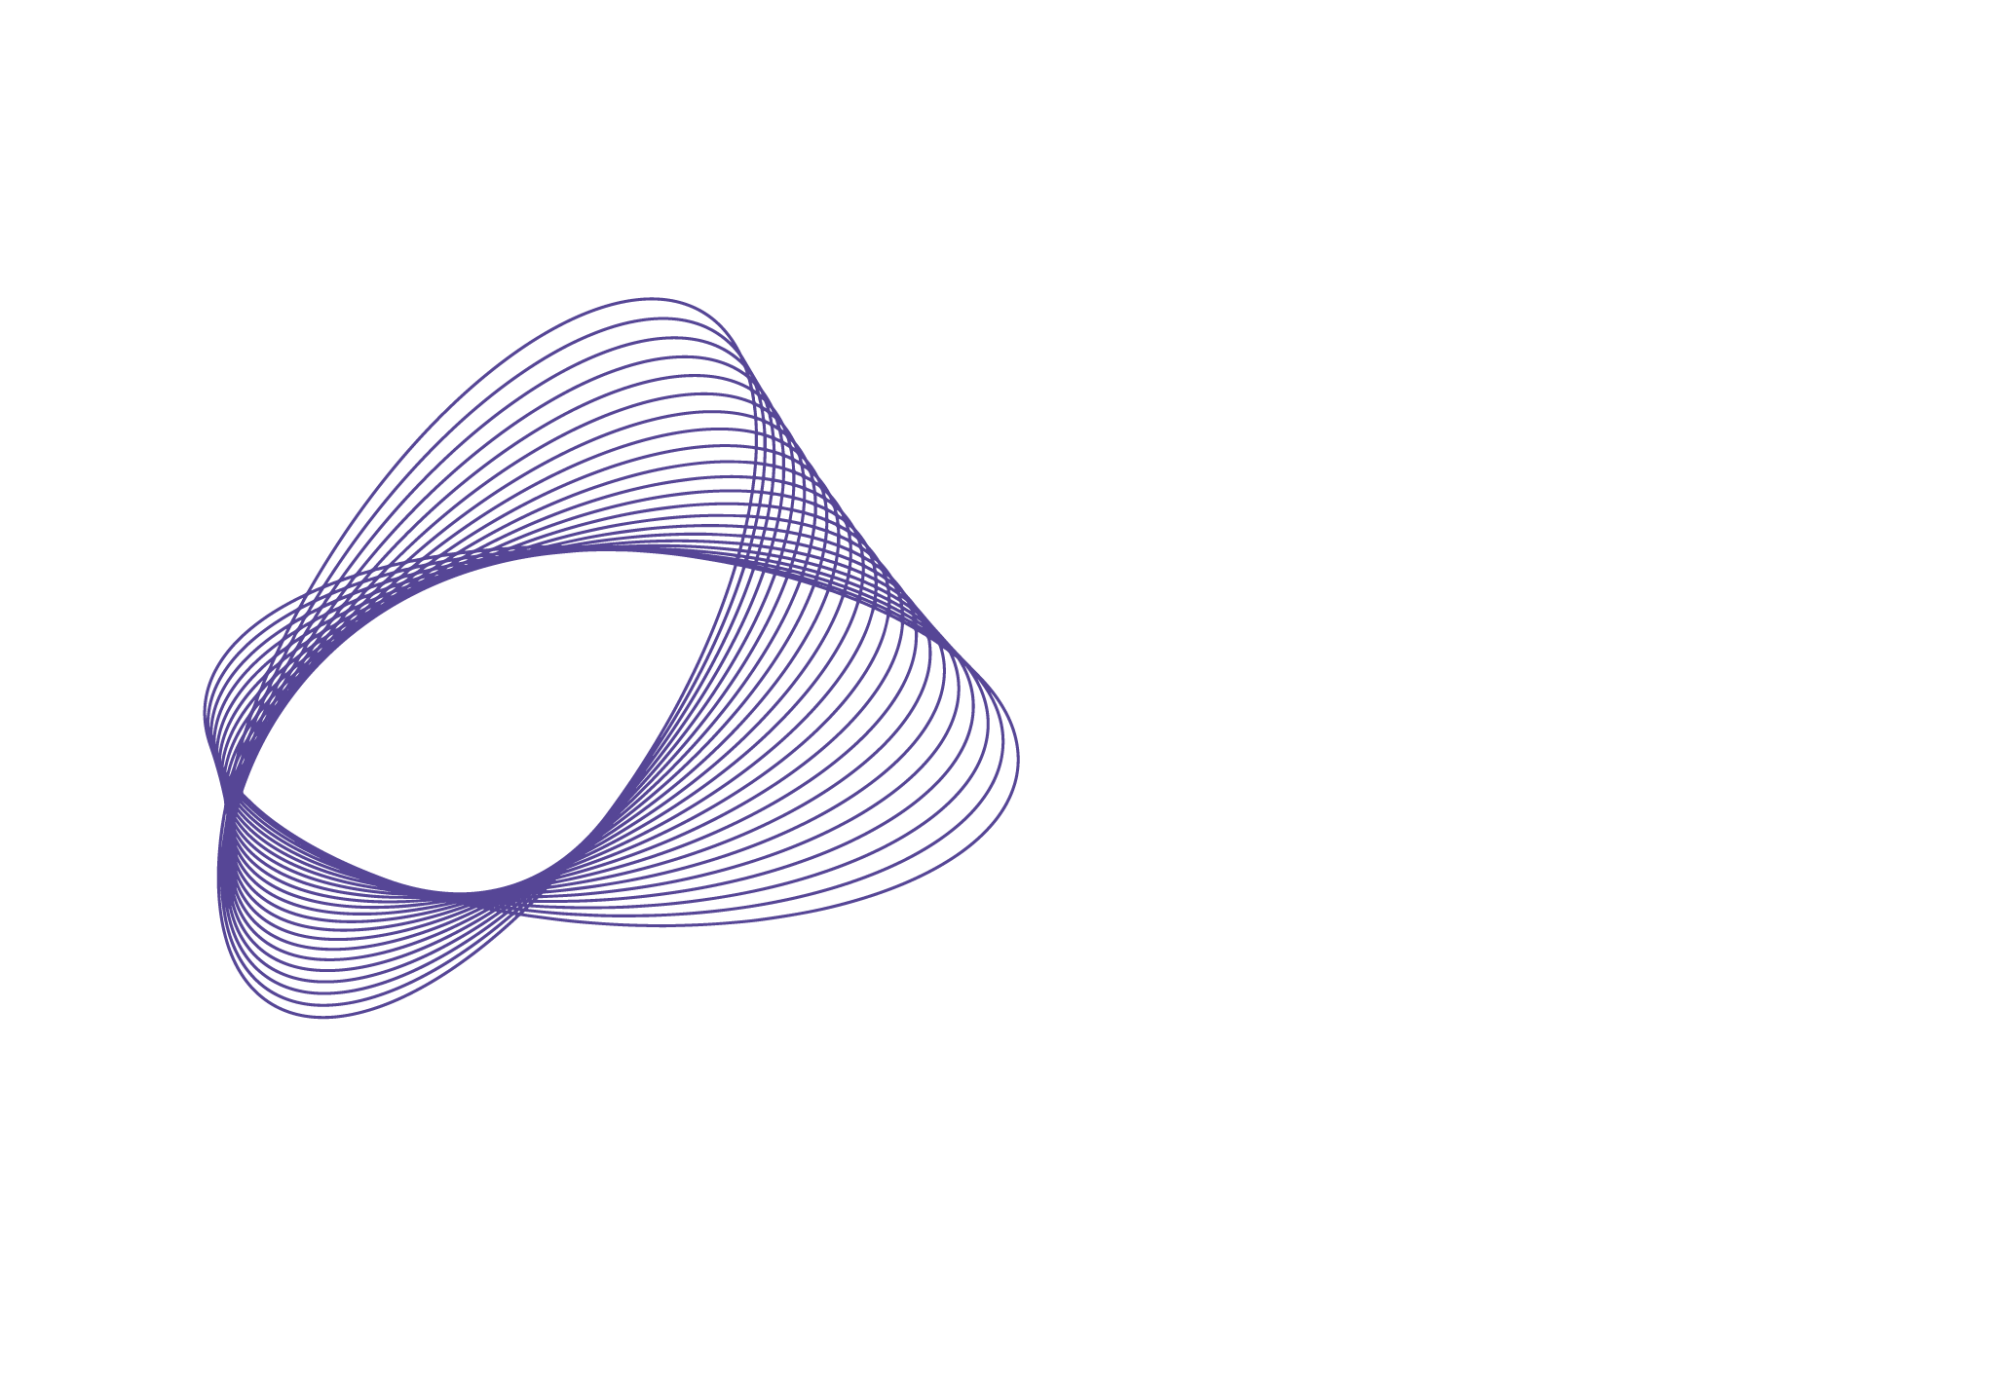 Showmustgodrone.com